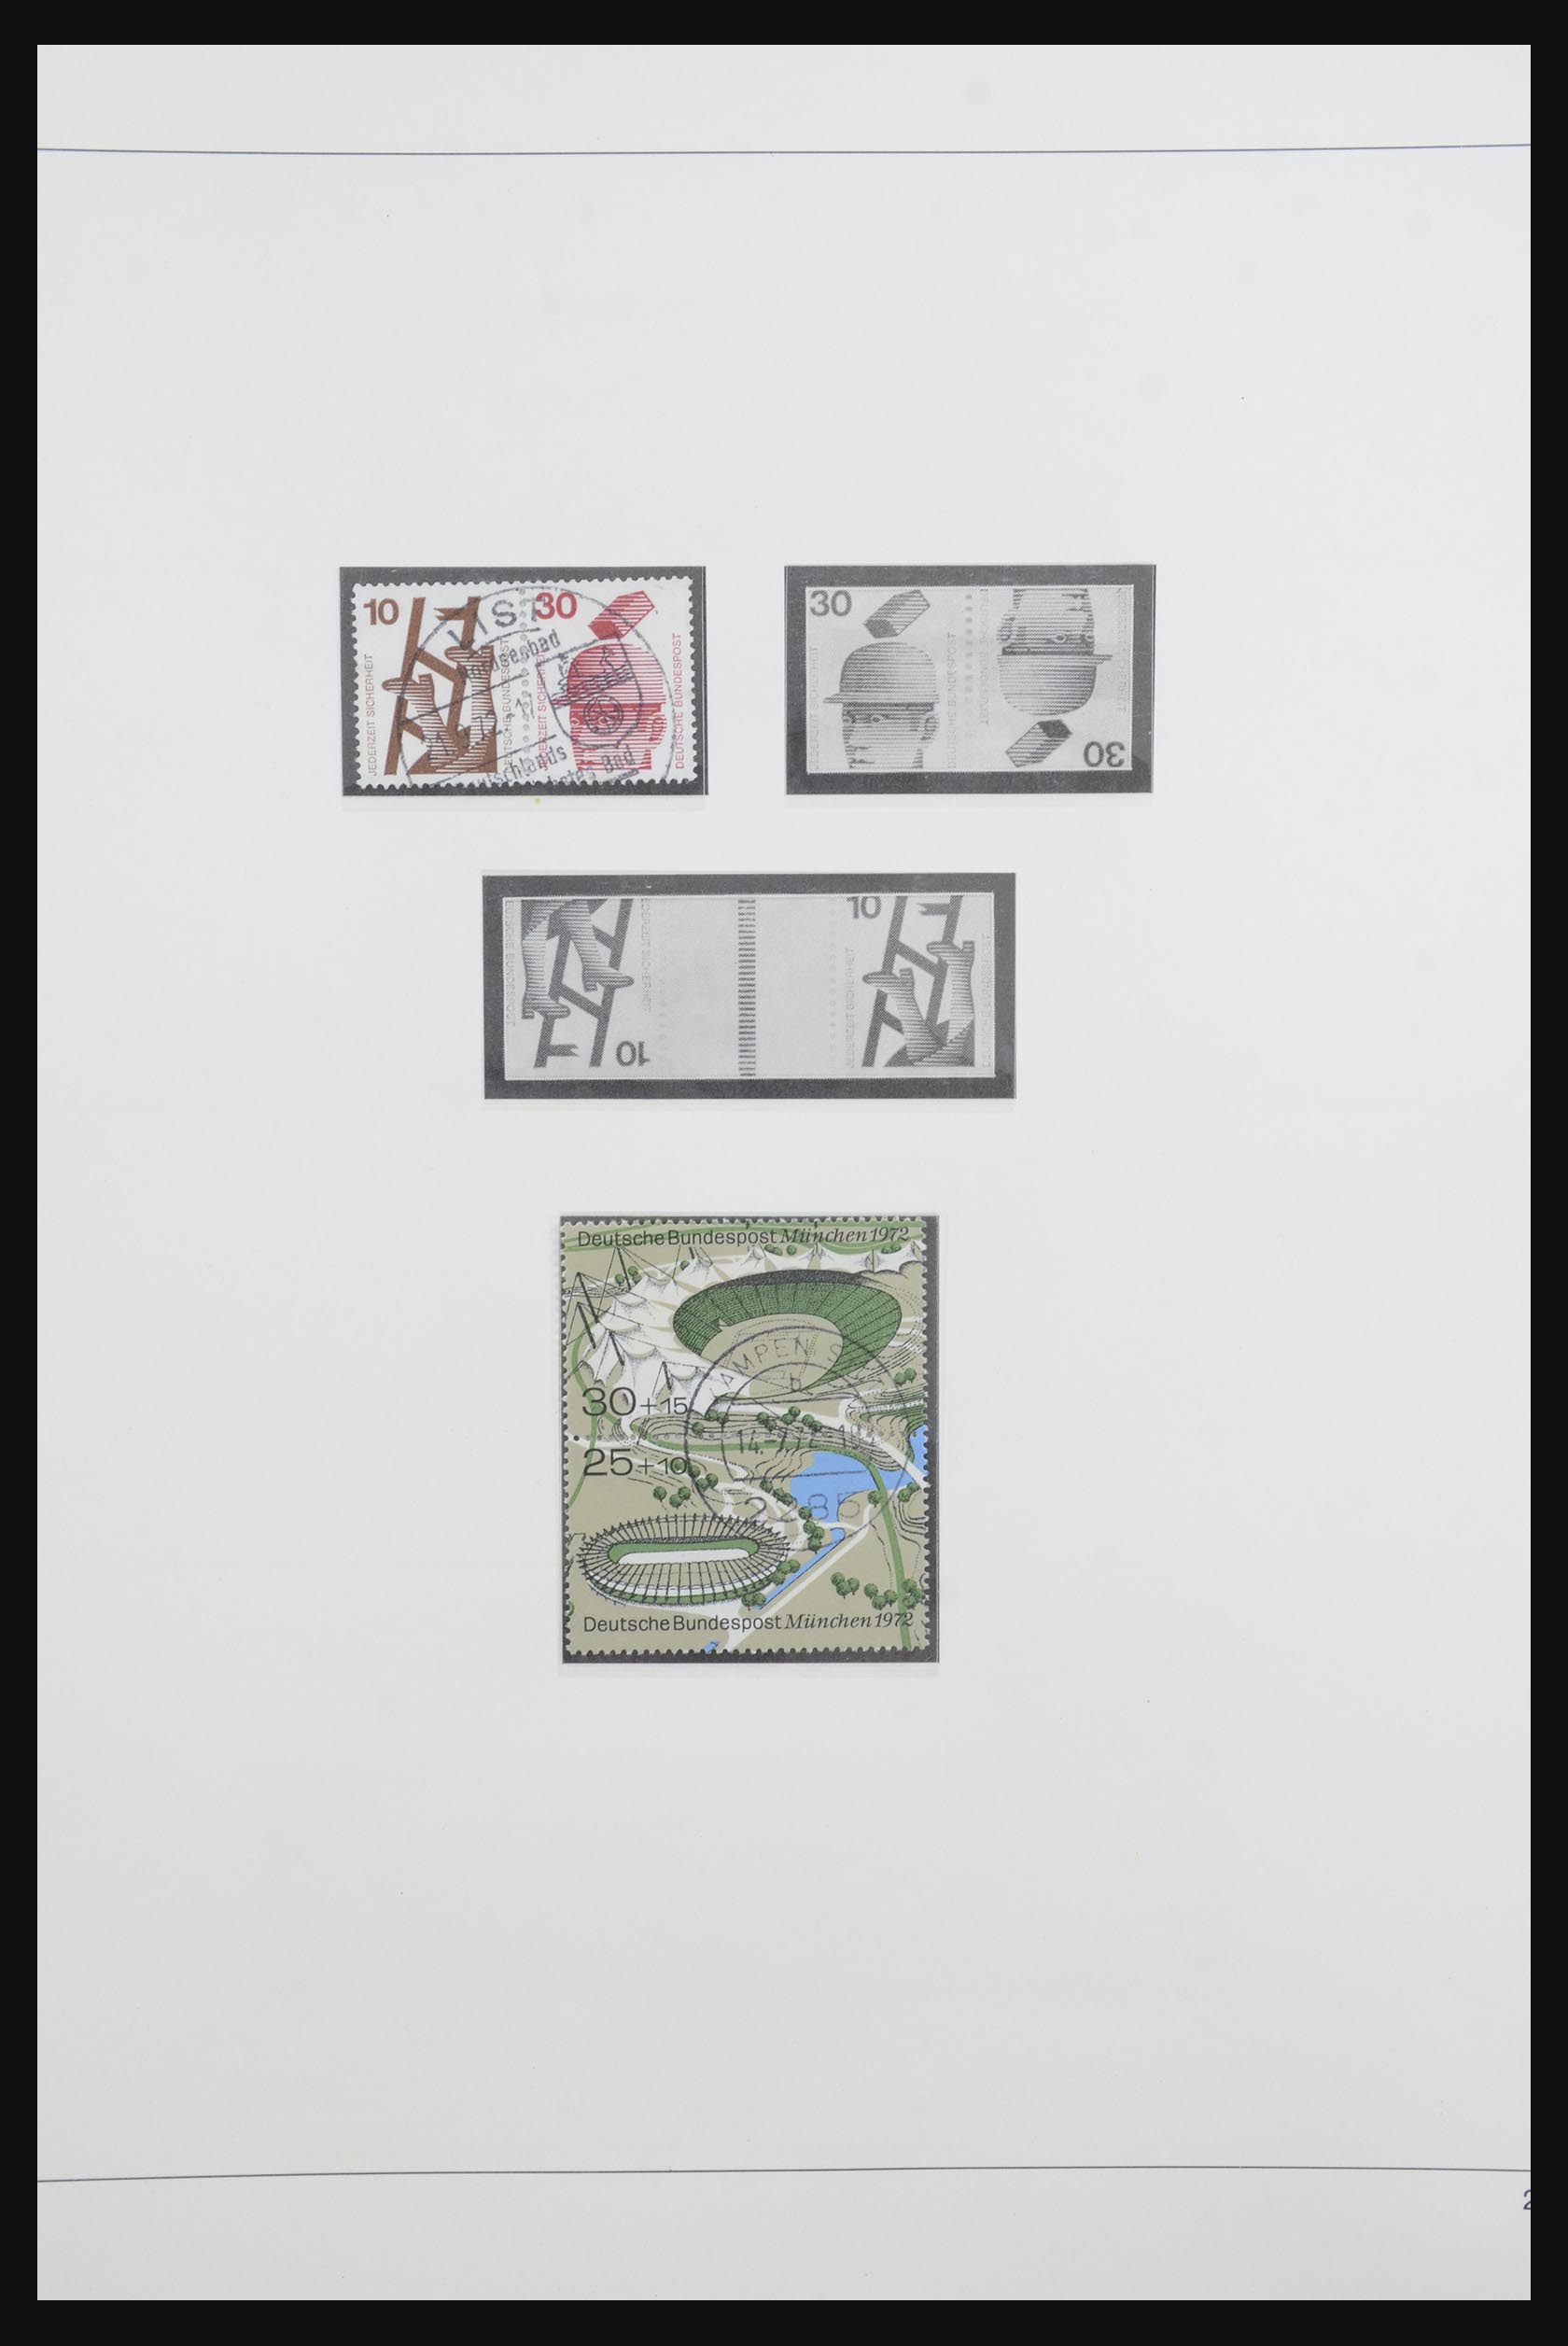 31842 039 - 31842 Bundespost combinaties 1951-2003.